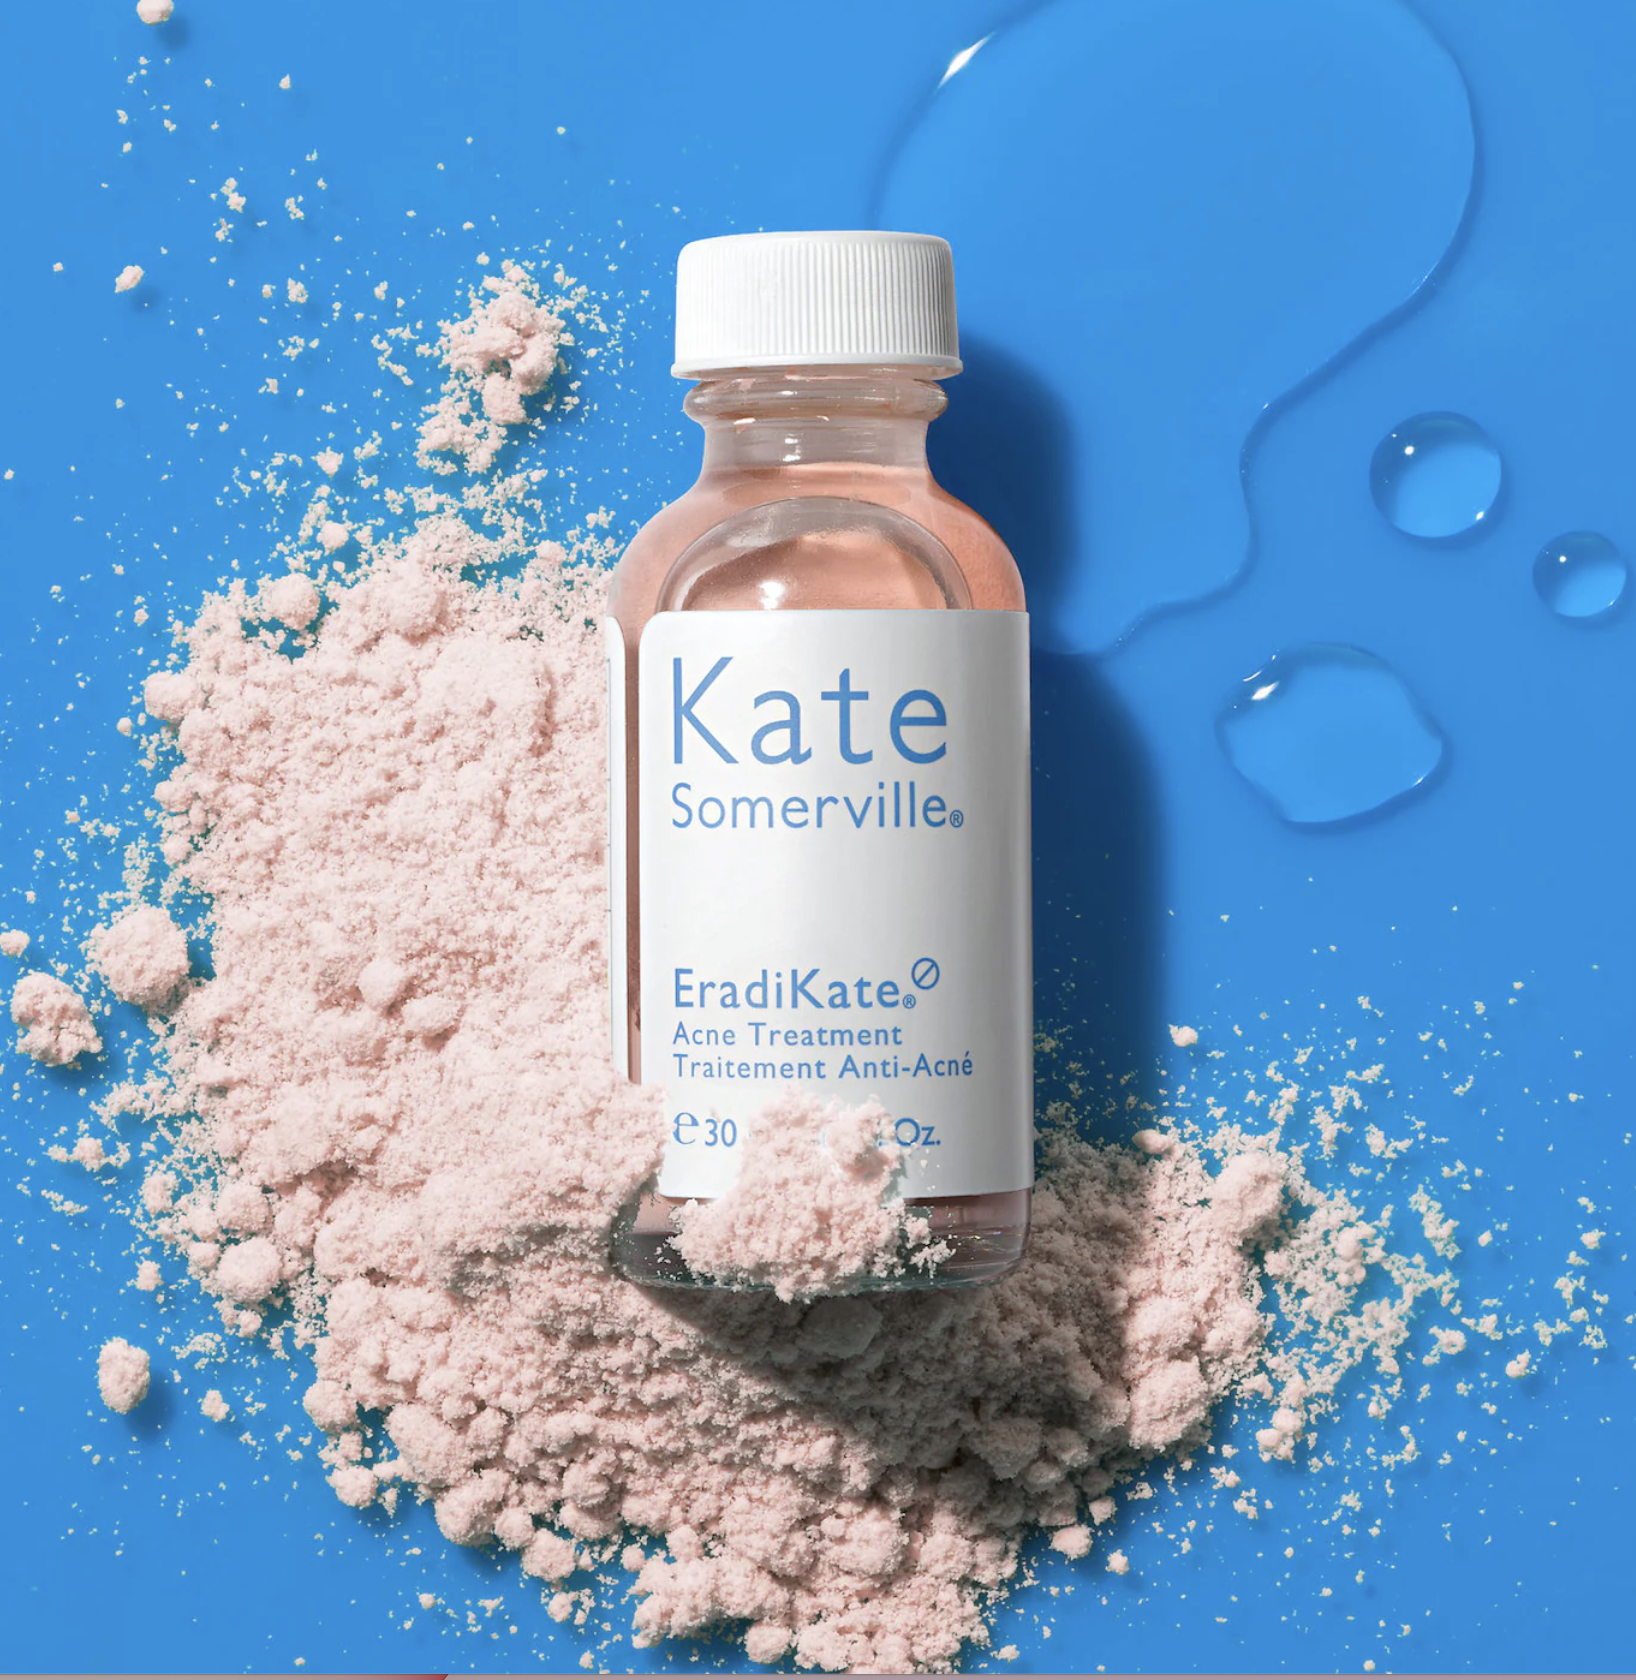 Bottle of Kate Somerville EradiKate acne treatment